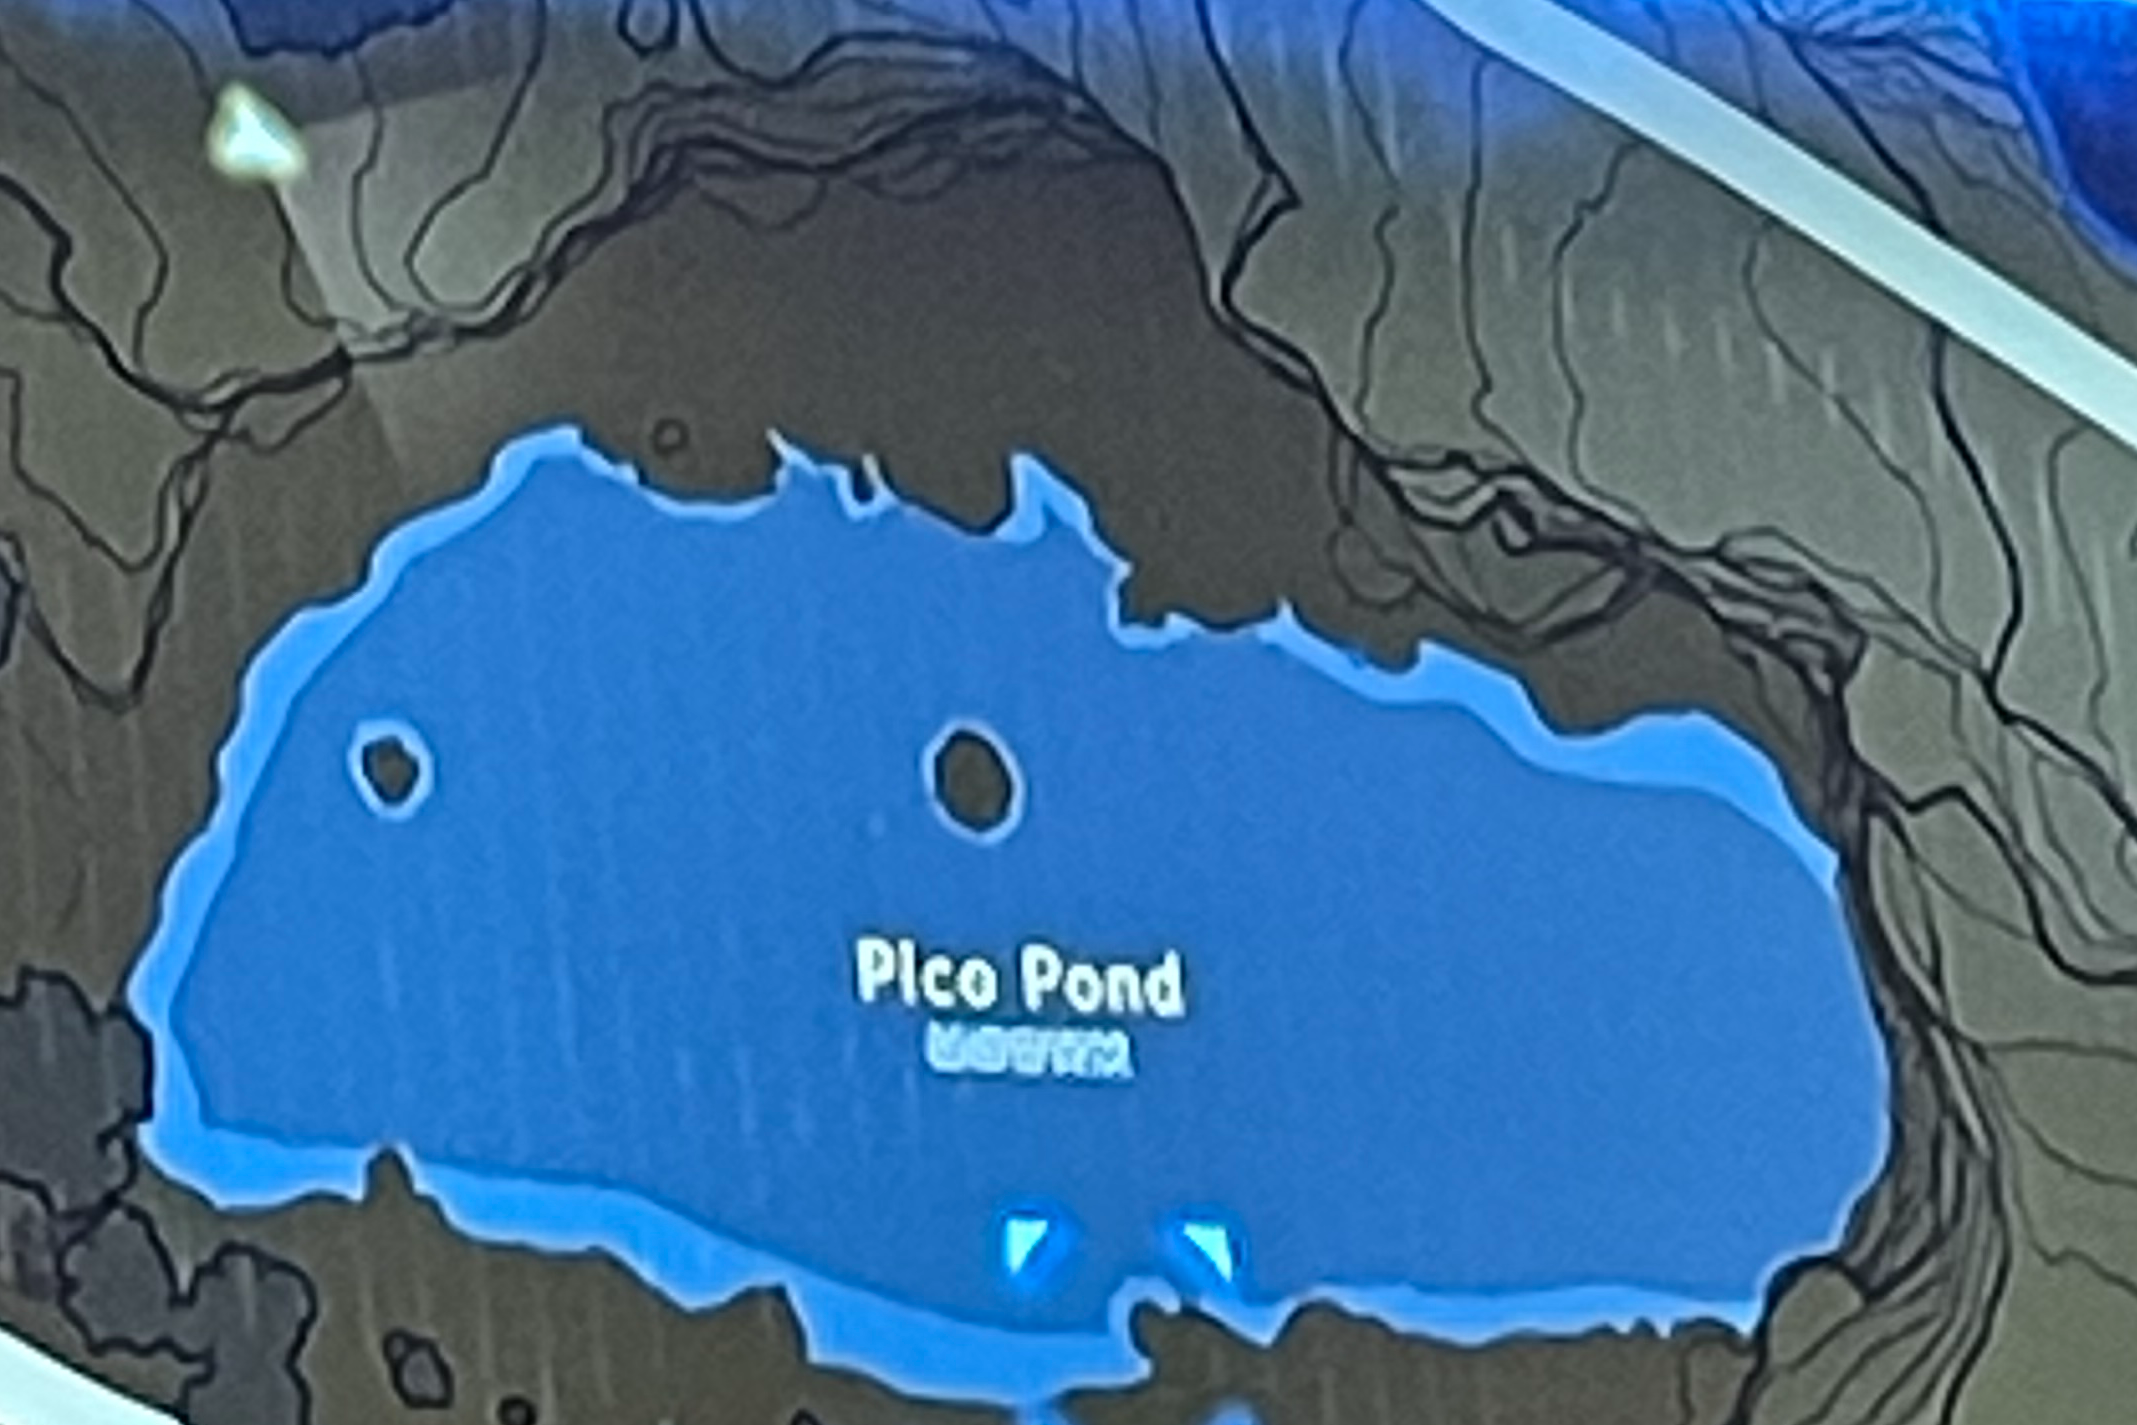 Pico pond Blank Meme Template